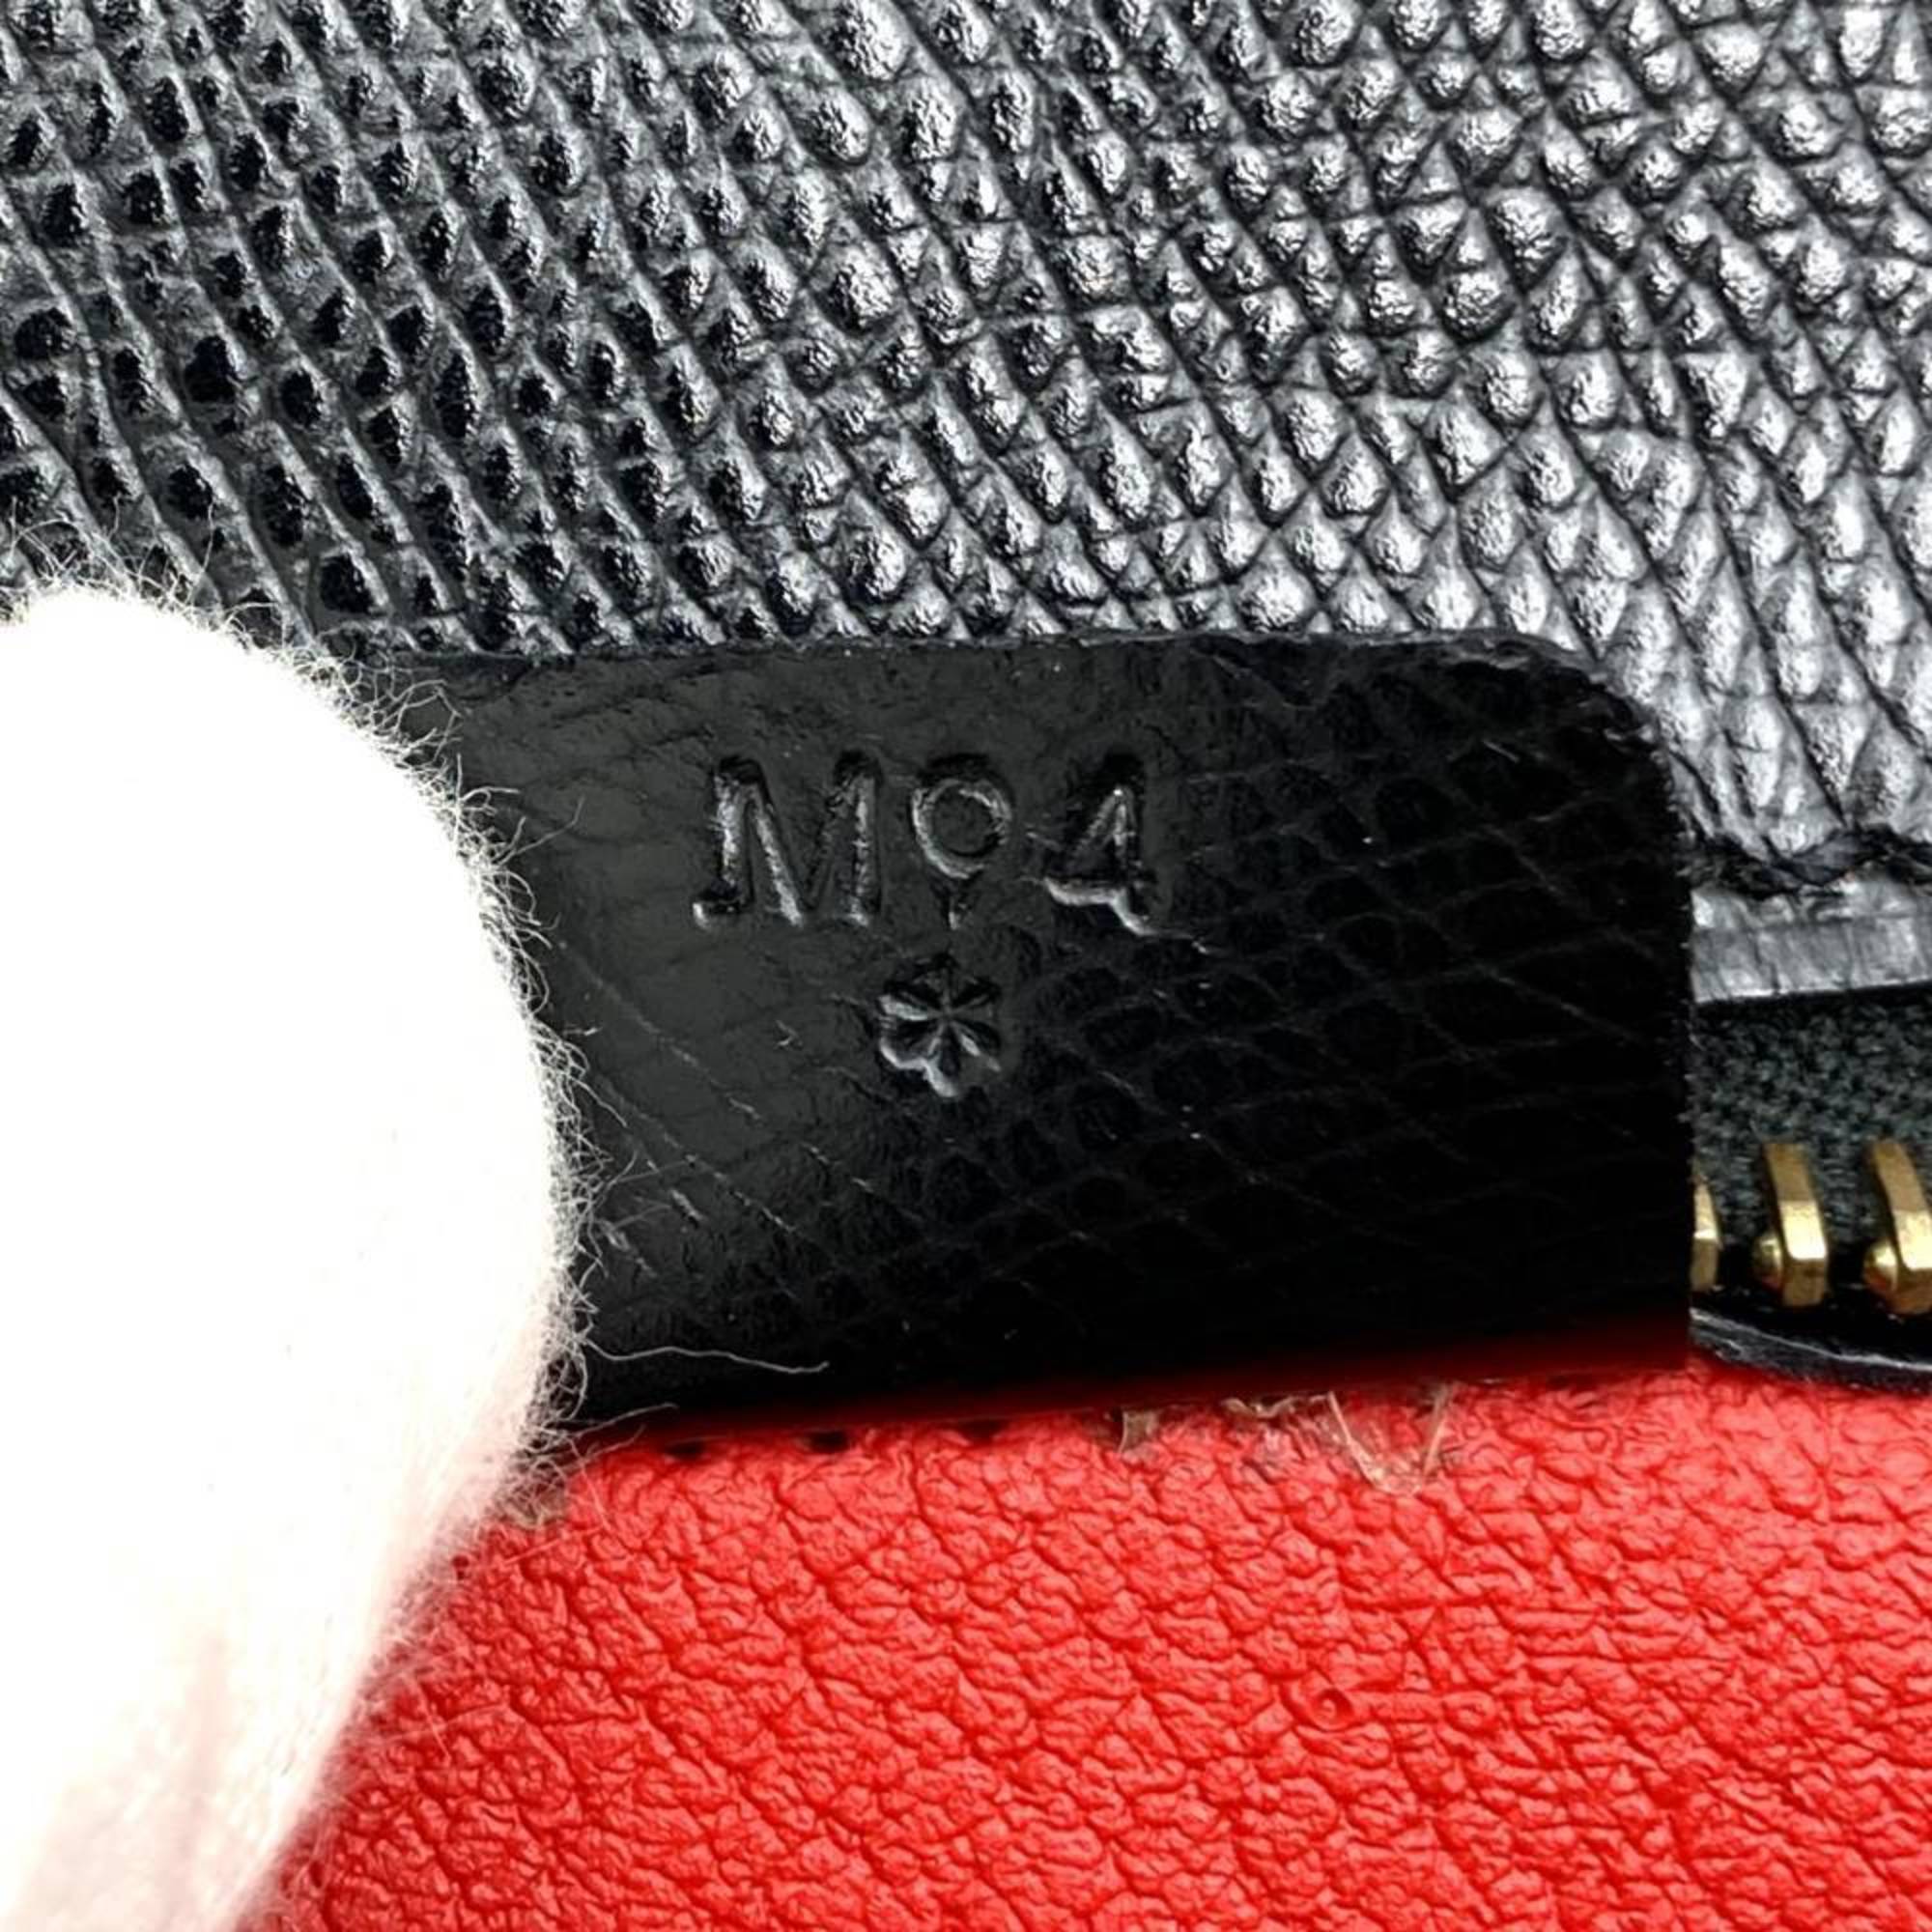 Celine handbag shoulder bag with strap 2way black leather ladies M94 CELINE